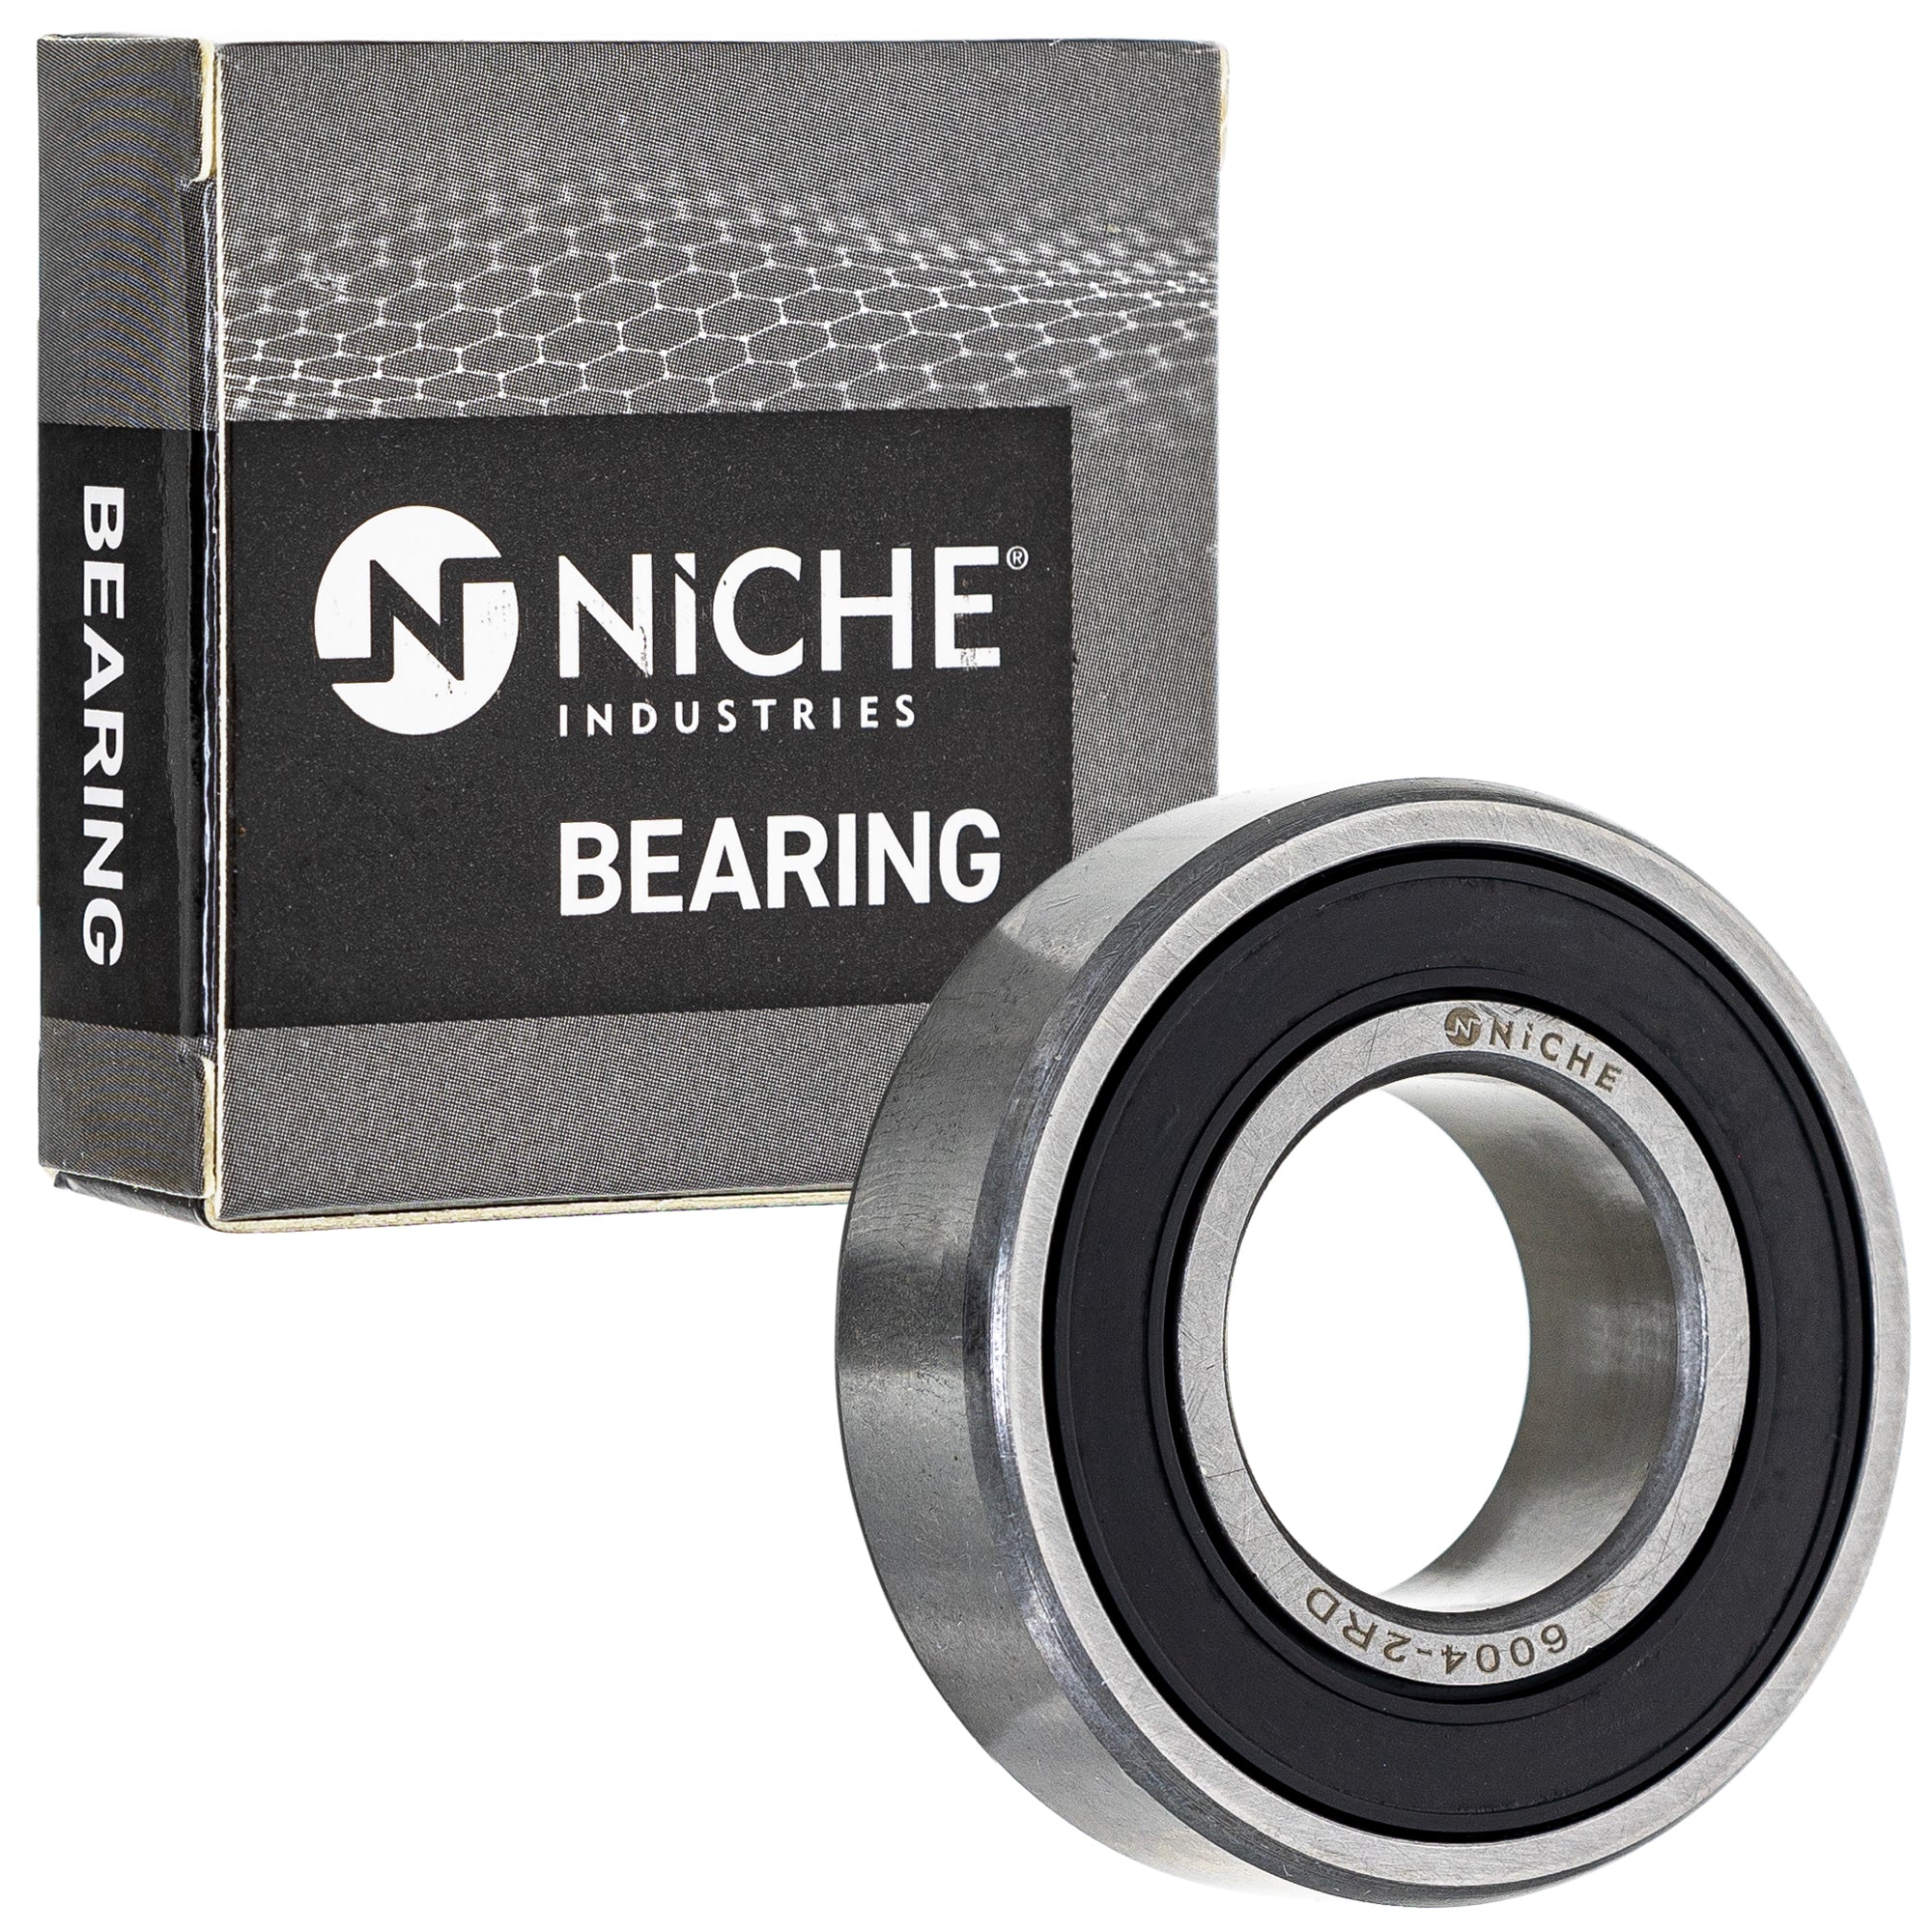 NICHE 519-CBB2230R Bearing for zOTHER VFR750R TTR110E TT600 TRX450